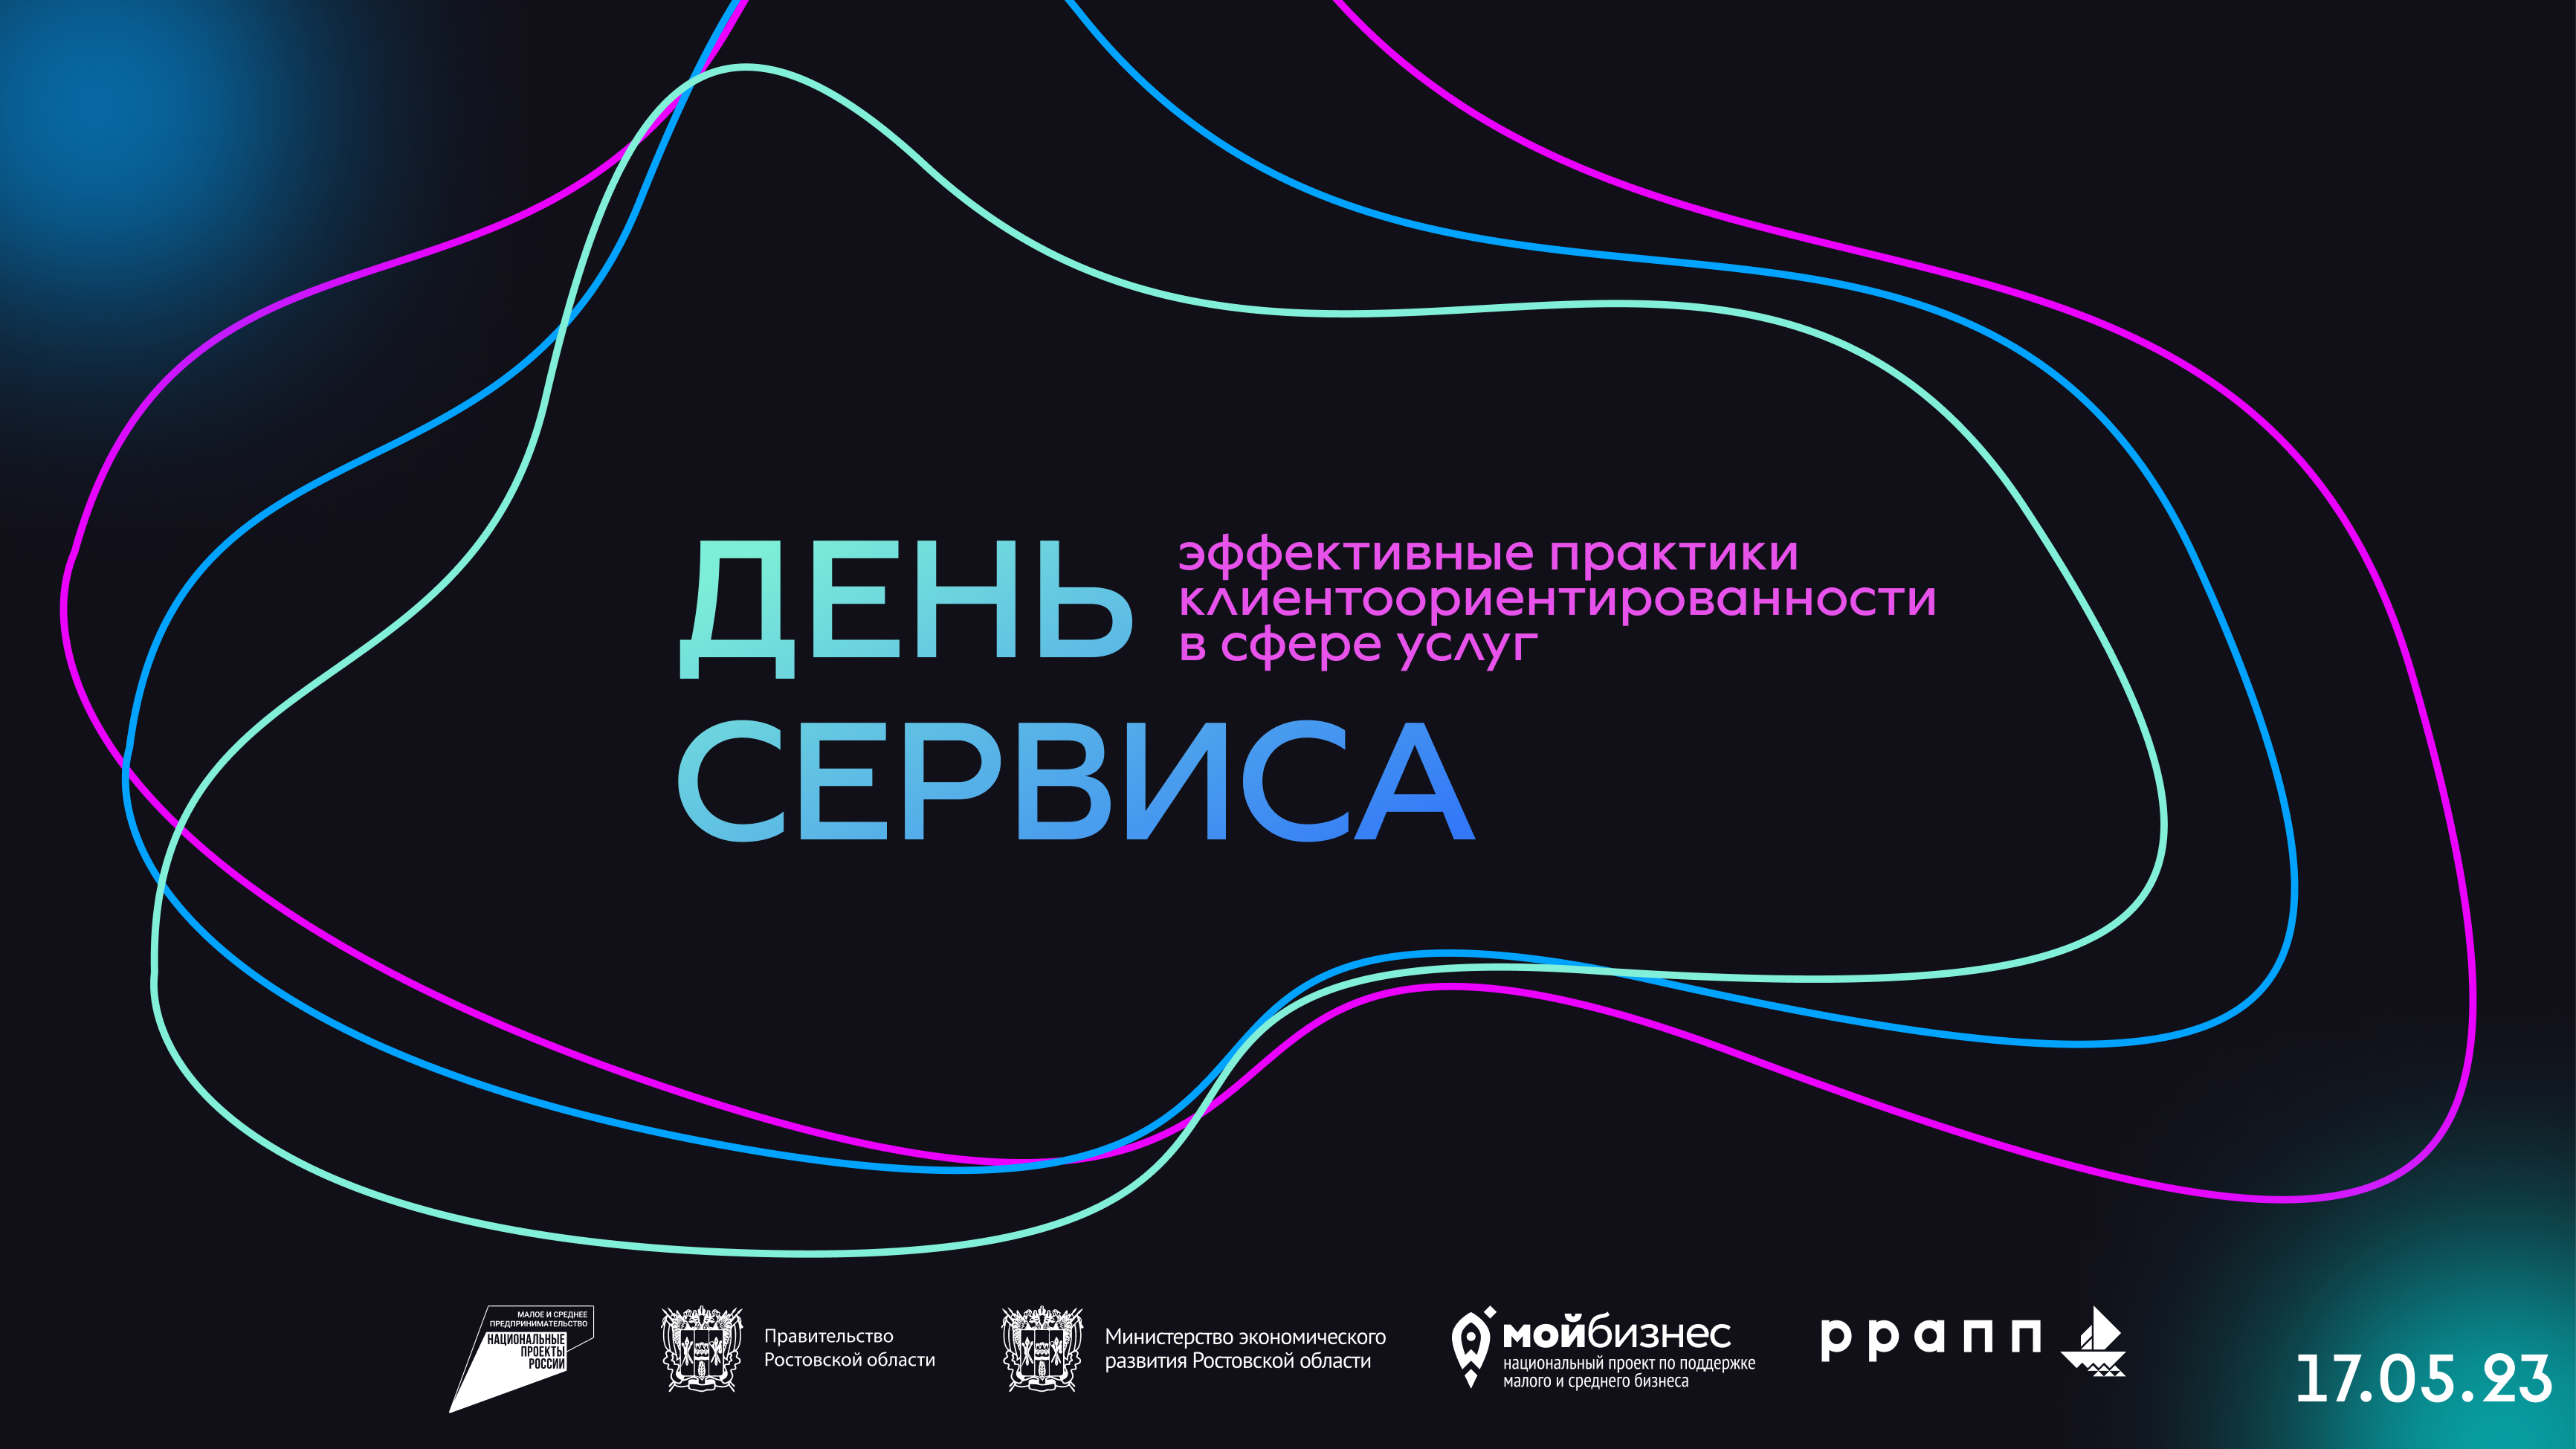 17 мая в Ростове-на-Дону состоится форум для предпринимателей «День сервиса»